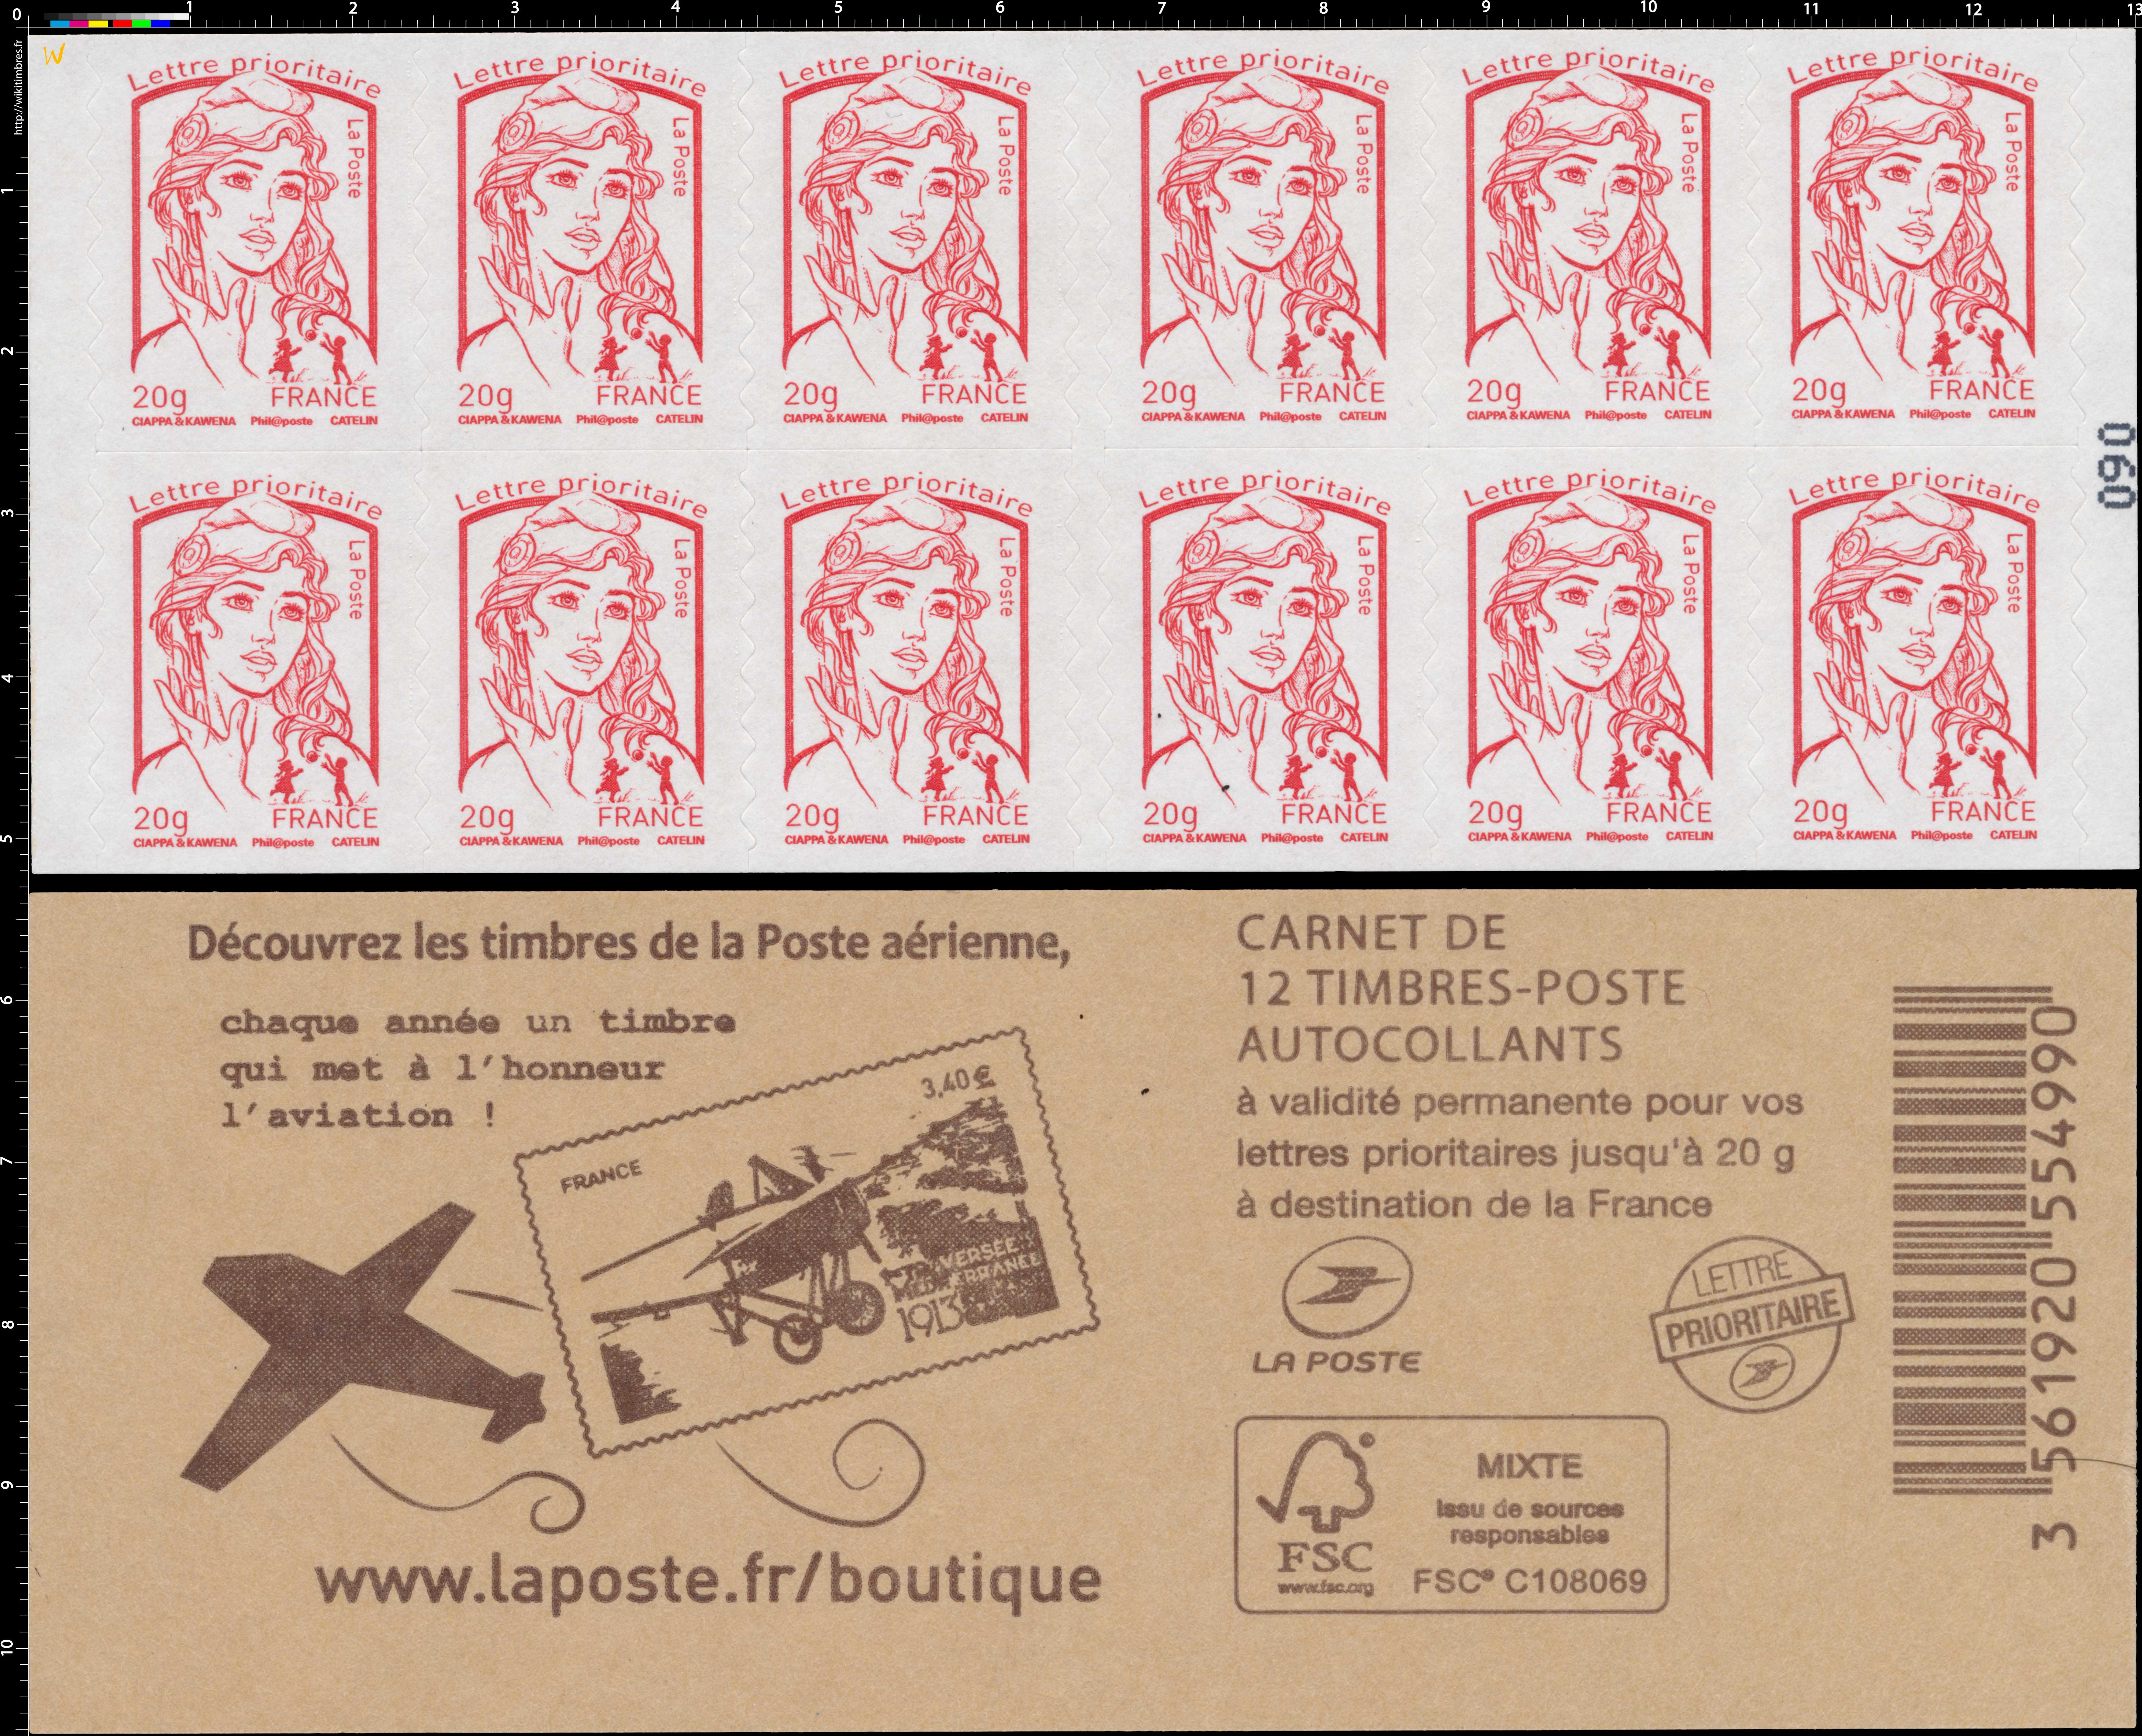 2015 Découvrez les timbres de la Poste aérienne